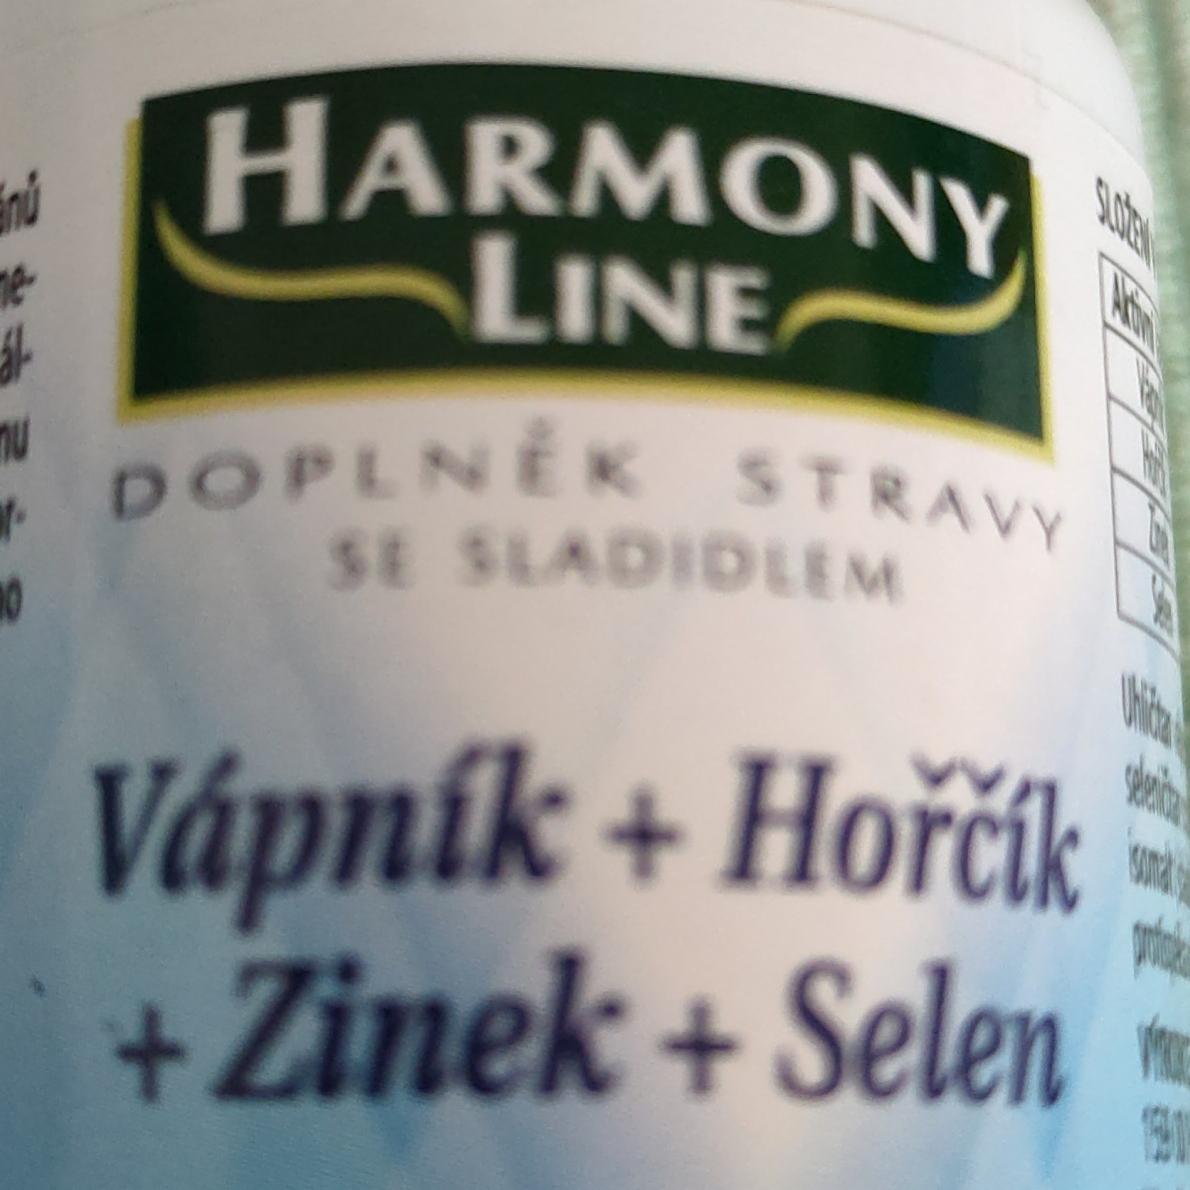 Fotografie - Vápník+Hořčík+Zinek+Selen Harmony Line